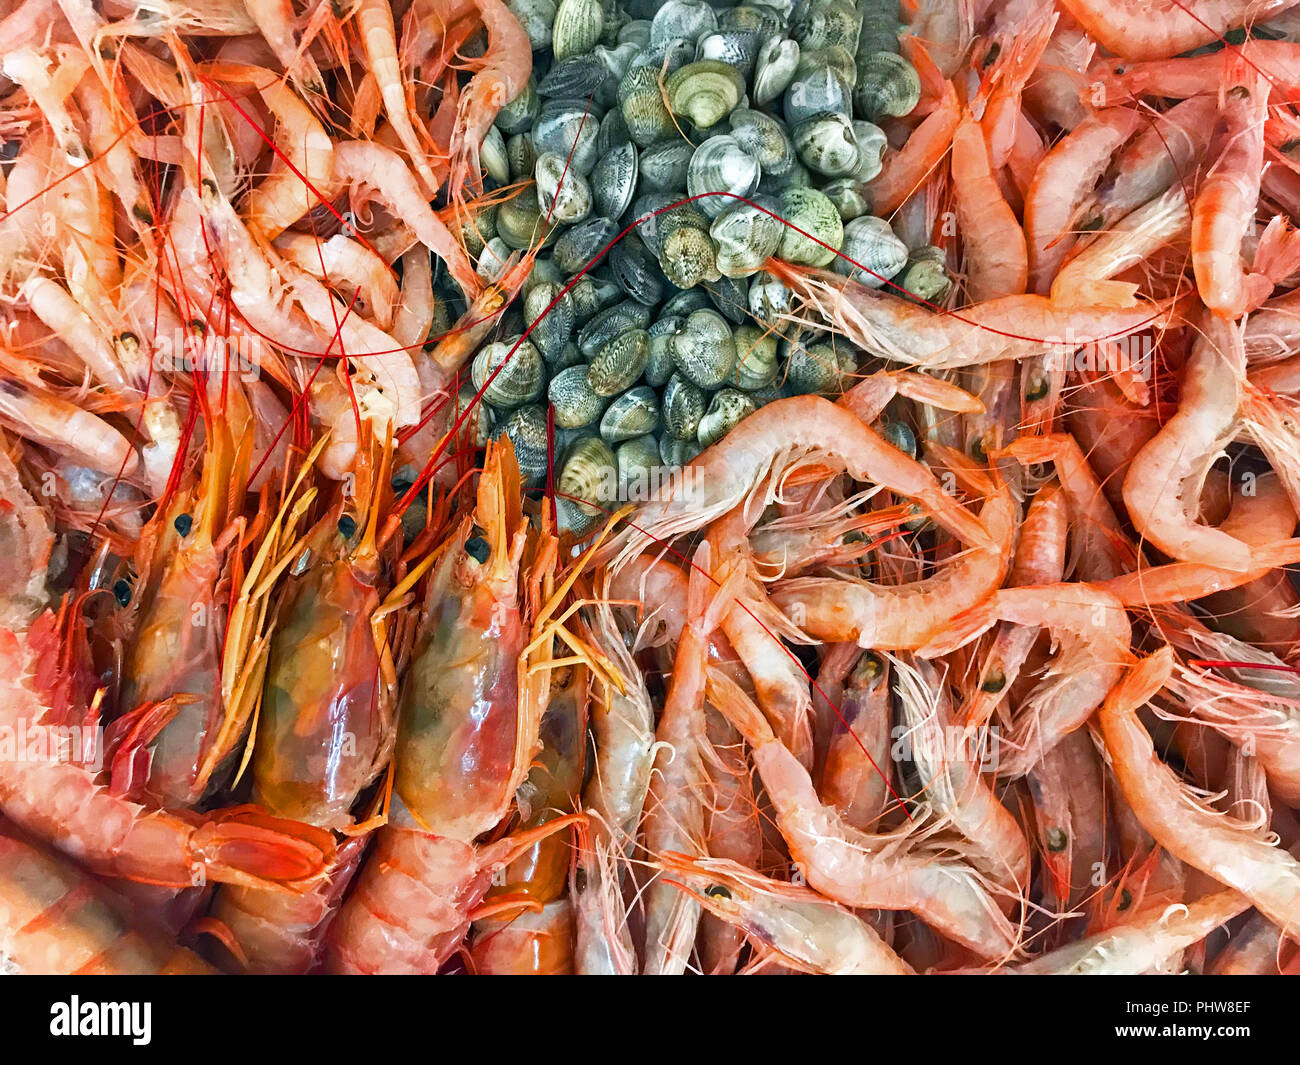 Différents types d'srimps et coquillages Banque D'Images